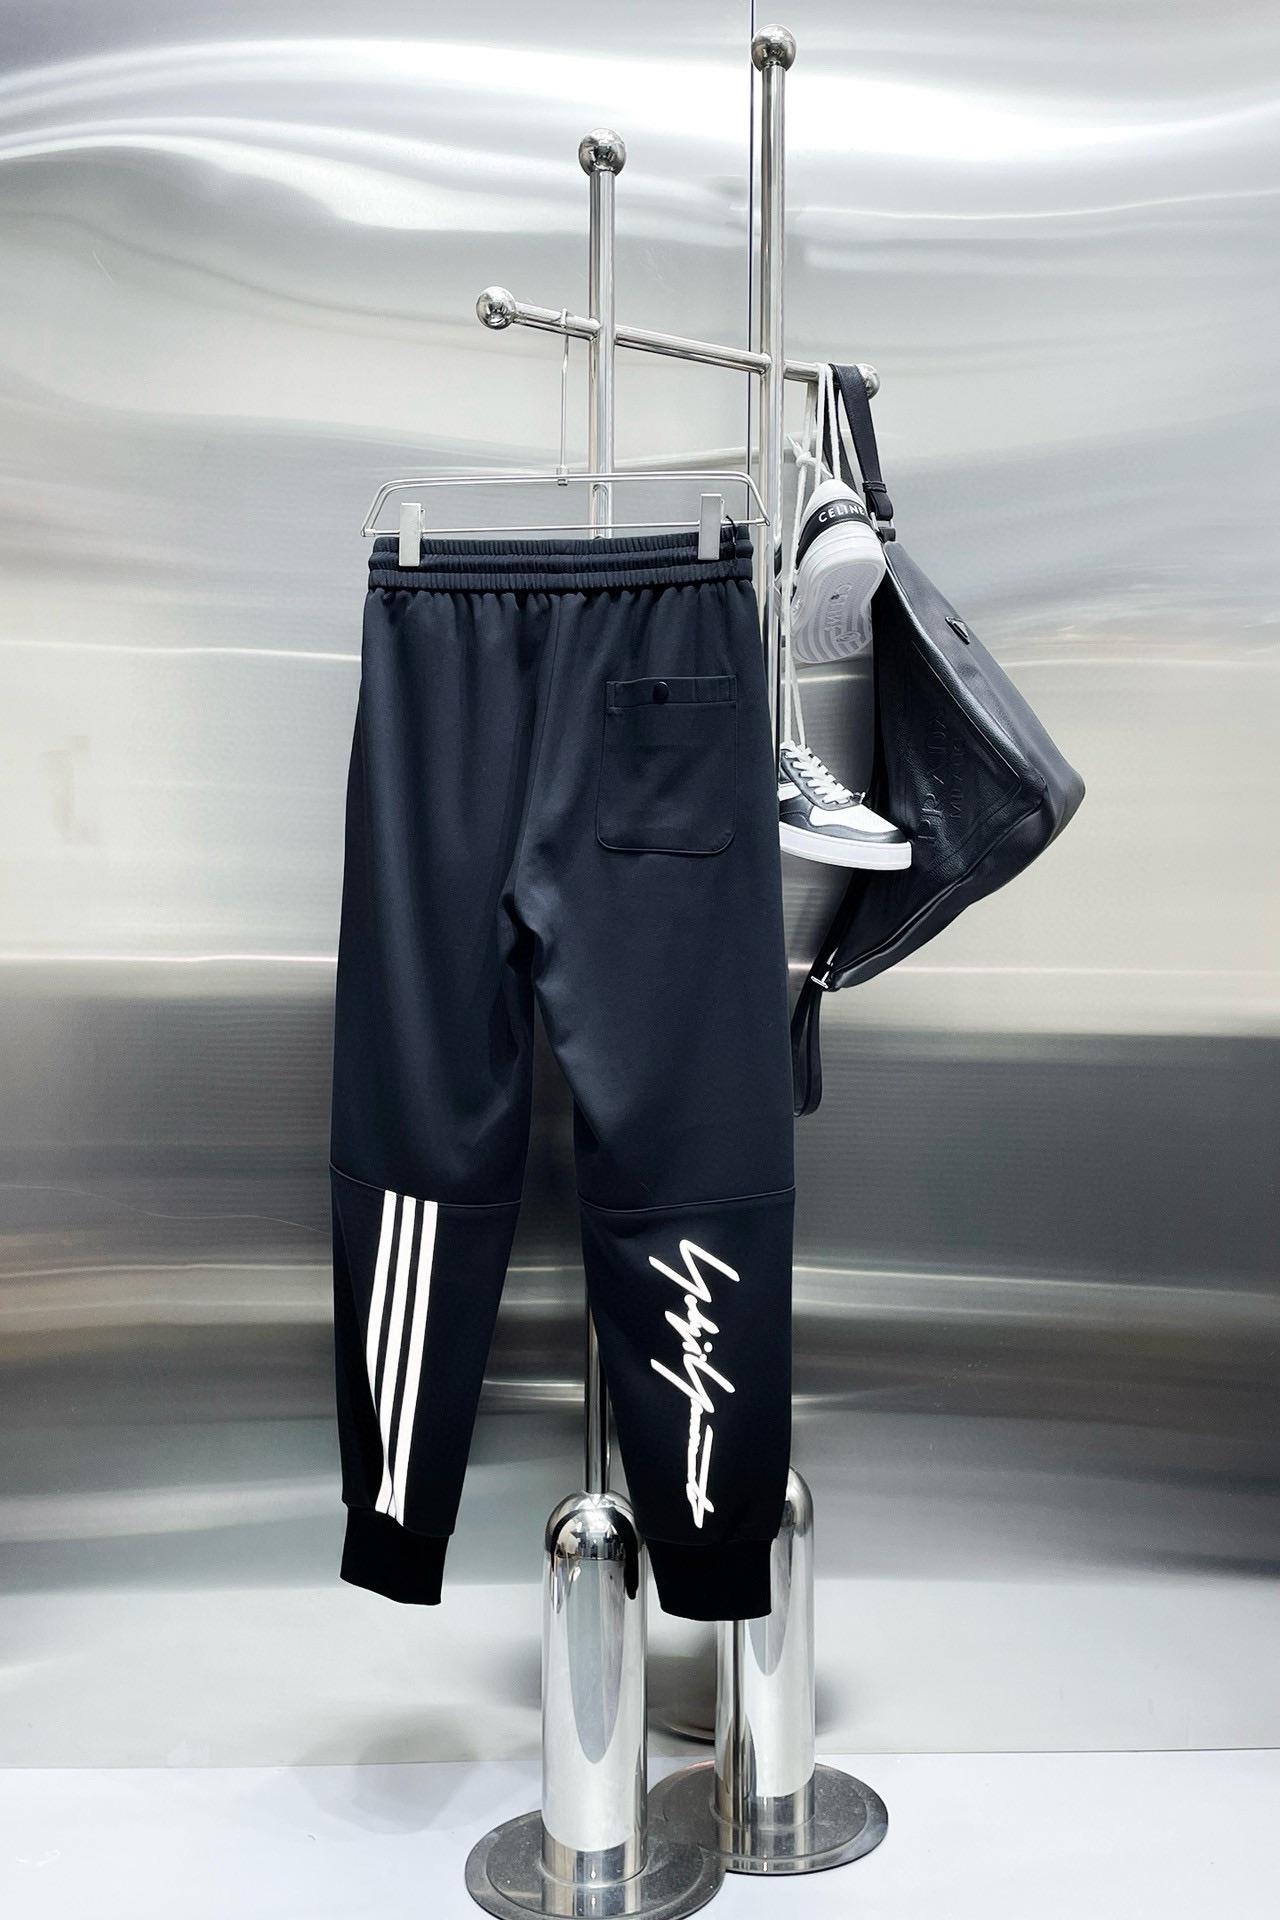 Y32024春季新款休闲裤！官网同步发售品牌经典LOGO休闲裤定制面料舒适度极好手触感强烈辨识度极高完美